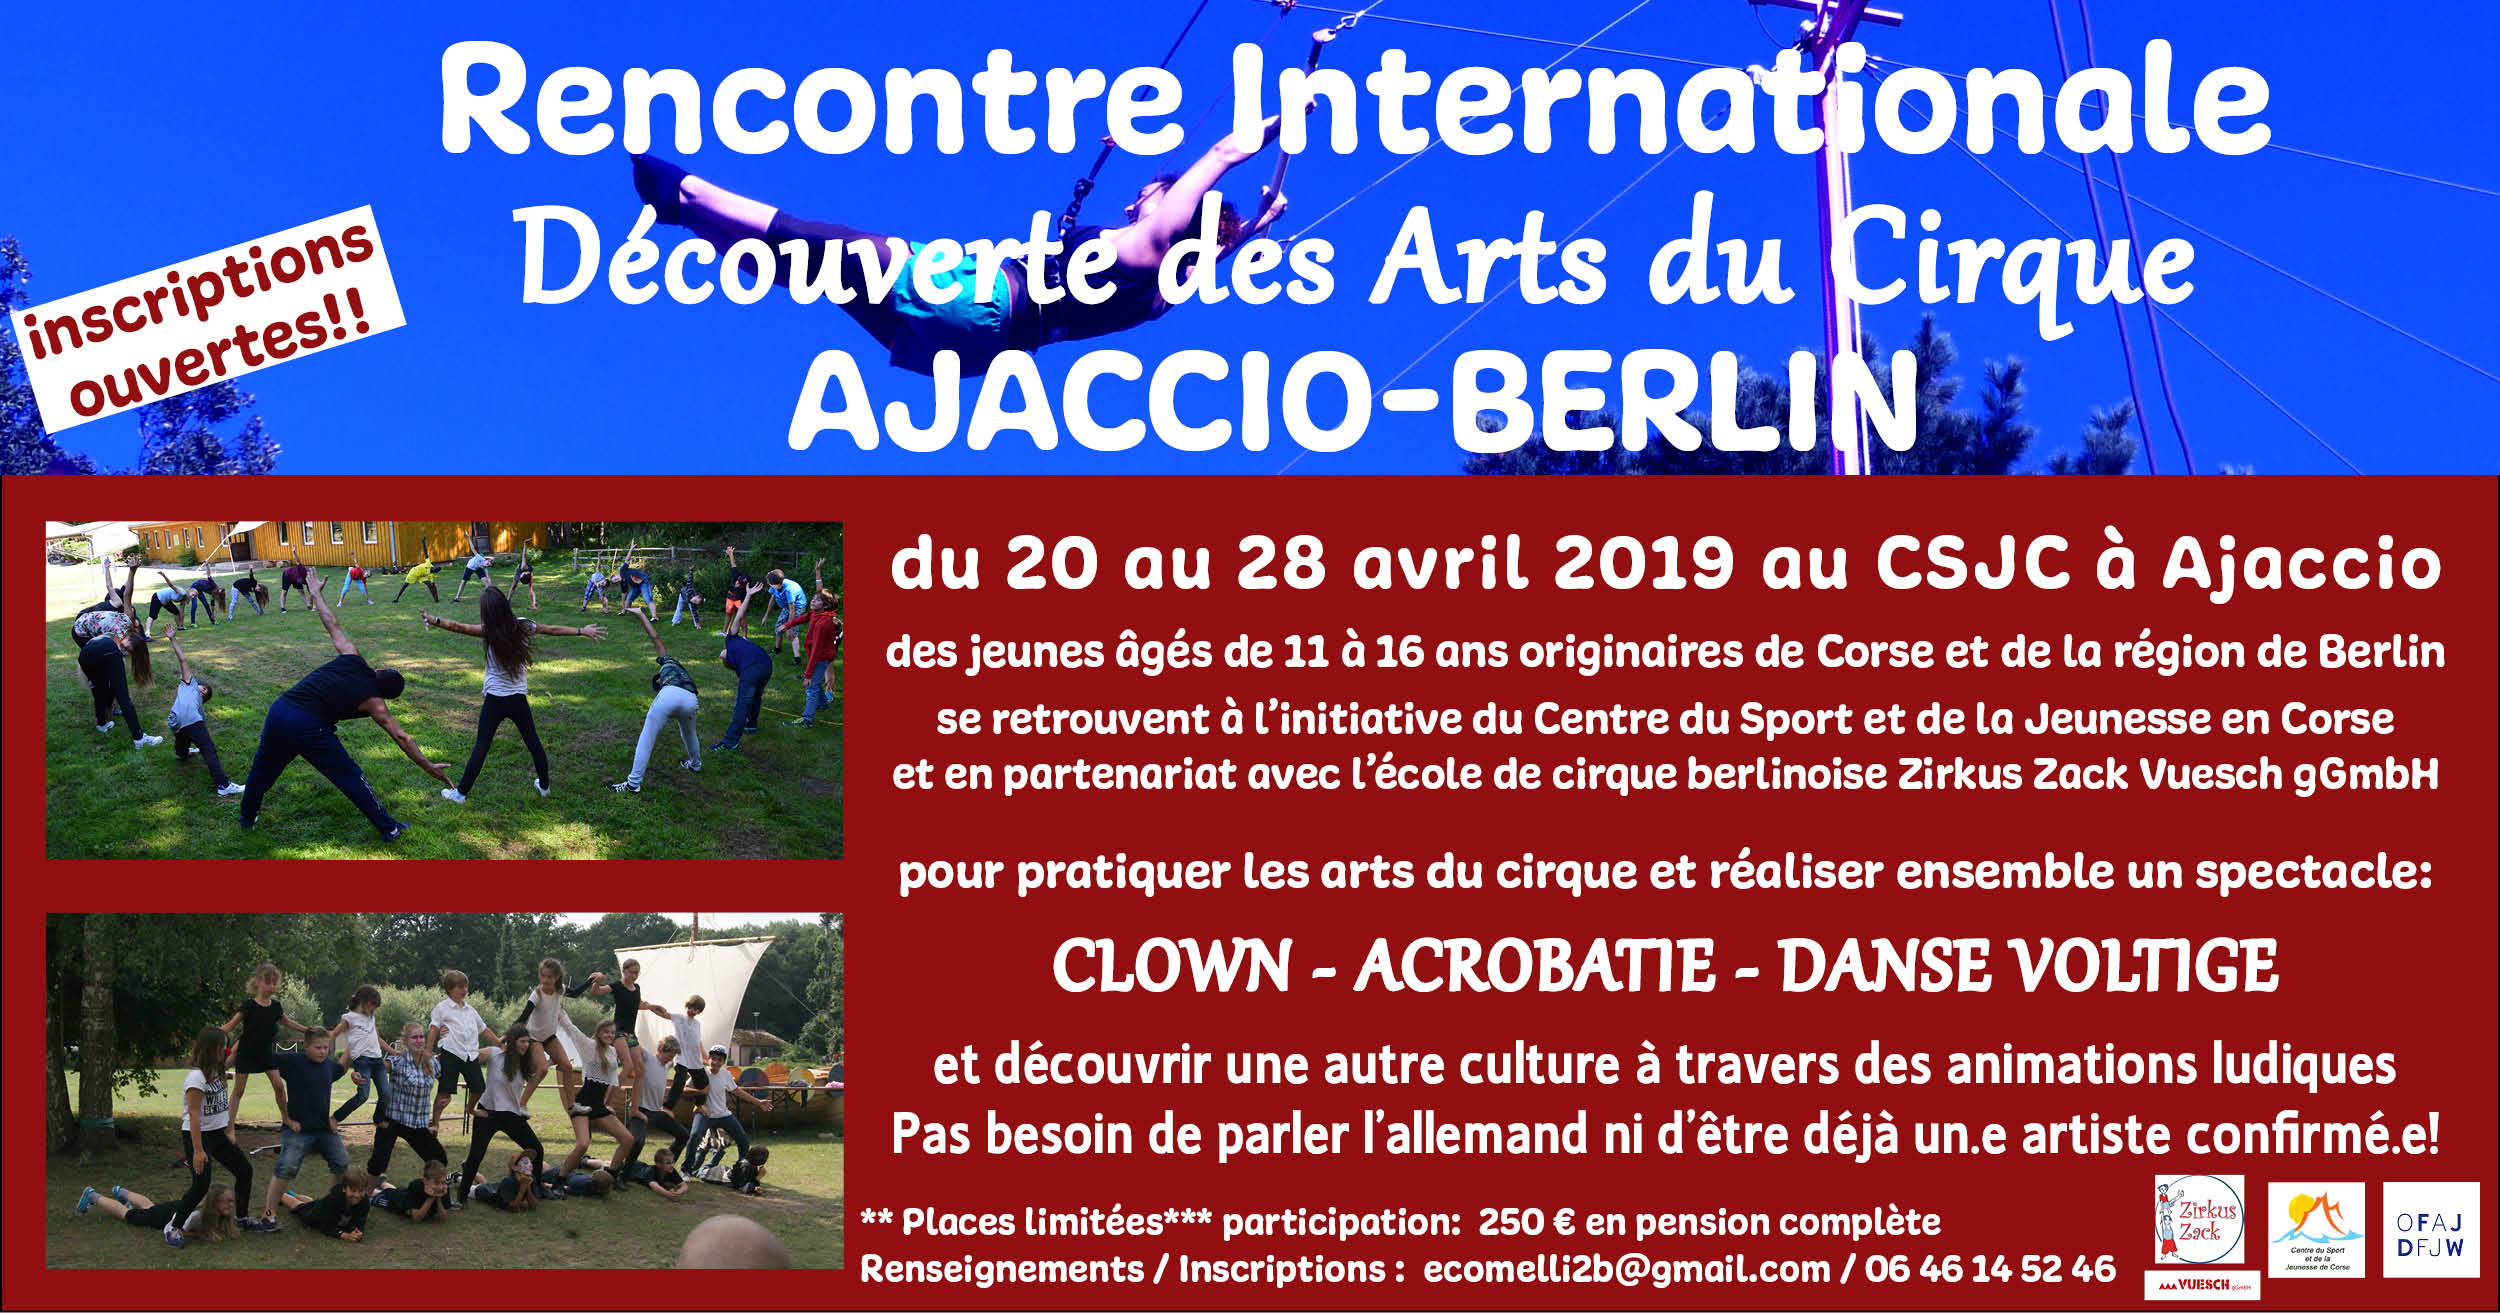  Echanges interculturels à travers les arts du cirque  au CSJC d'Ajaccio, du 20 au 28 avril.